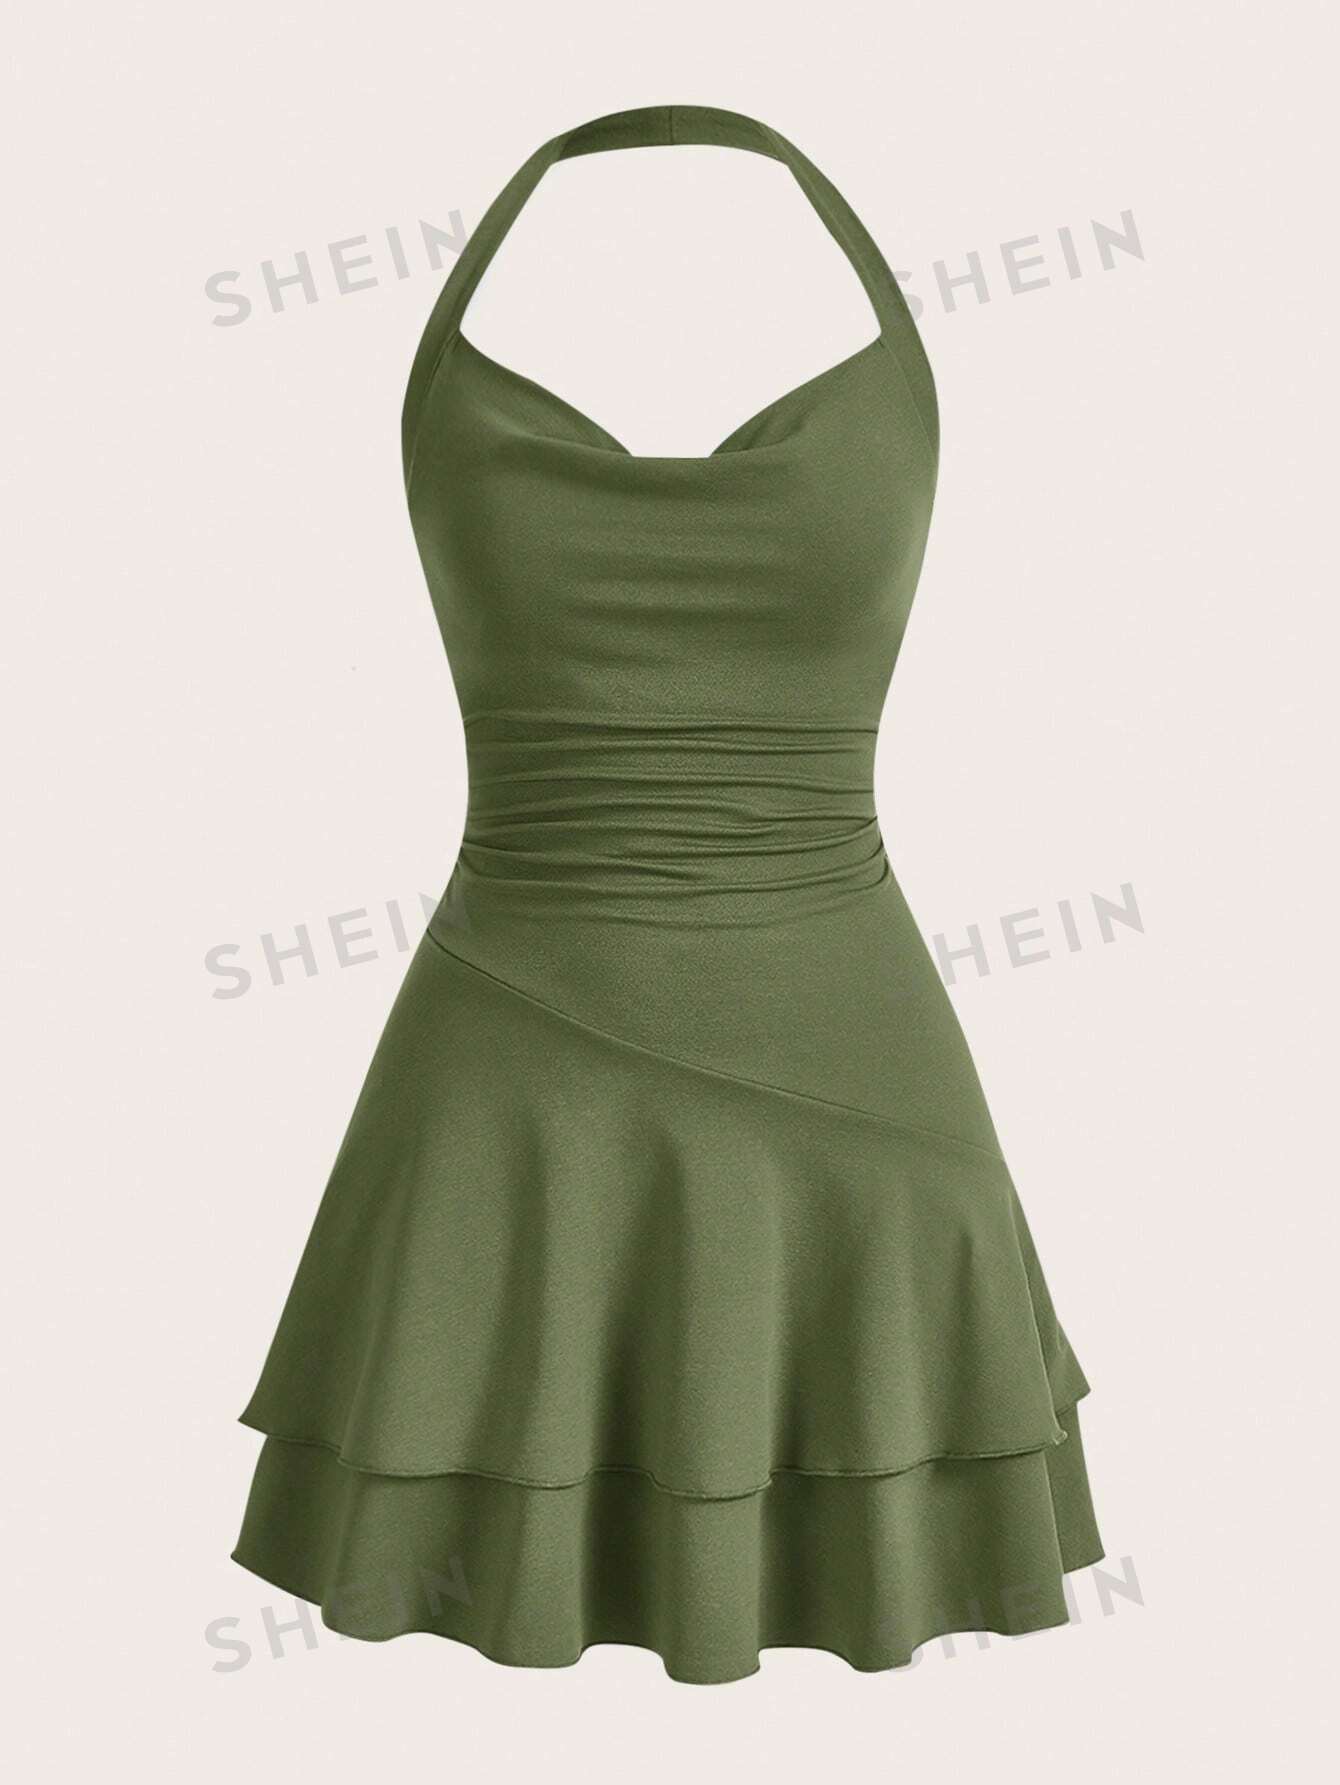 SHEIN MOD однотонное женское платье с бретелькой на шее и многослойным подолом, армейский зеленый